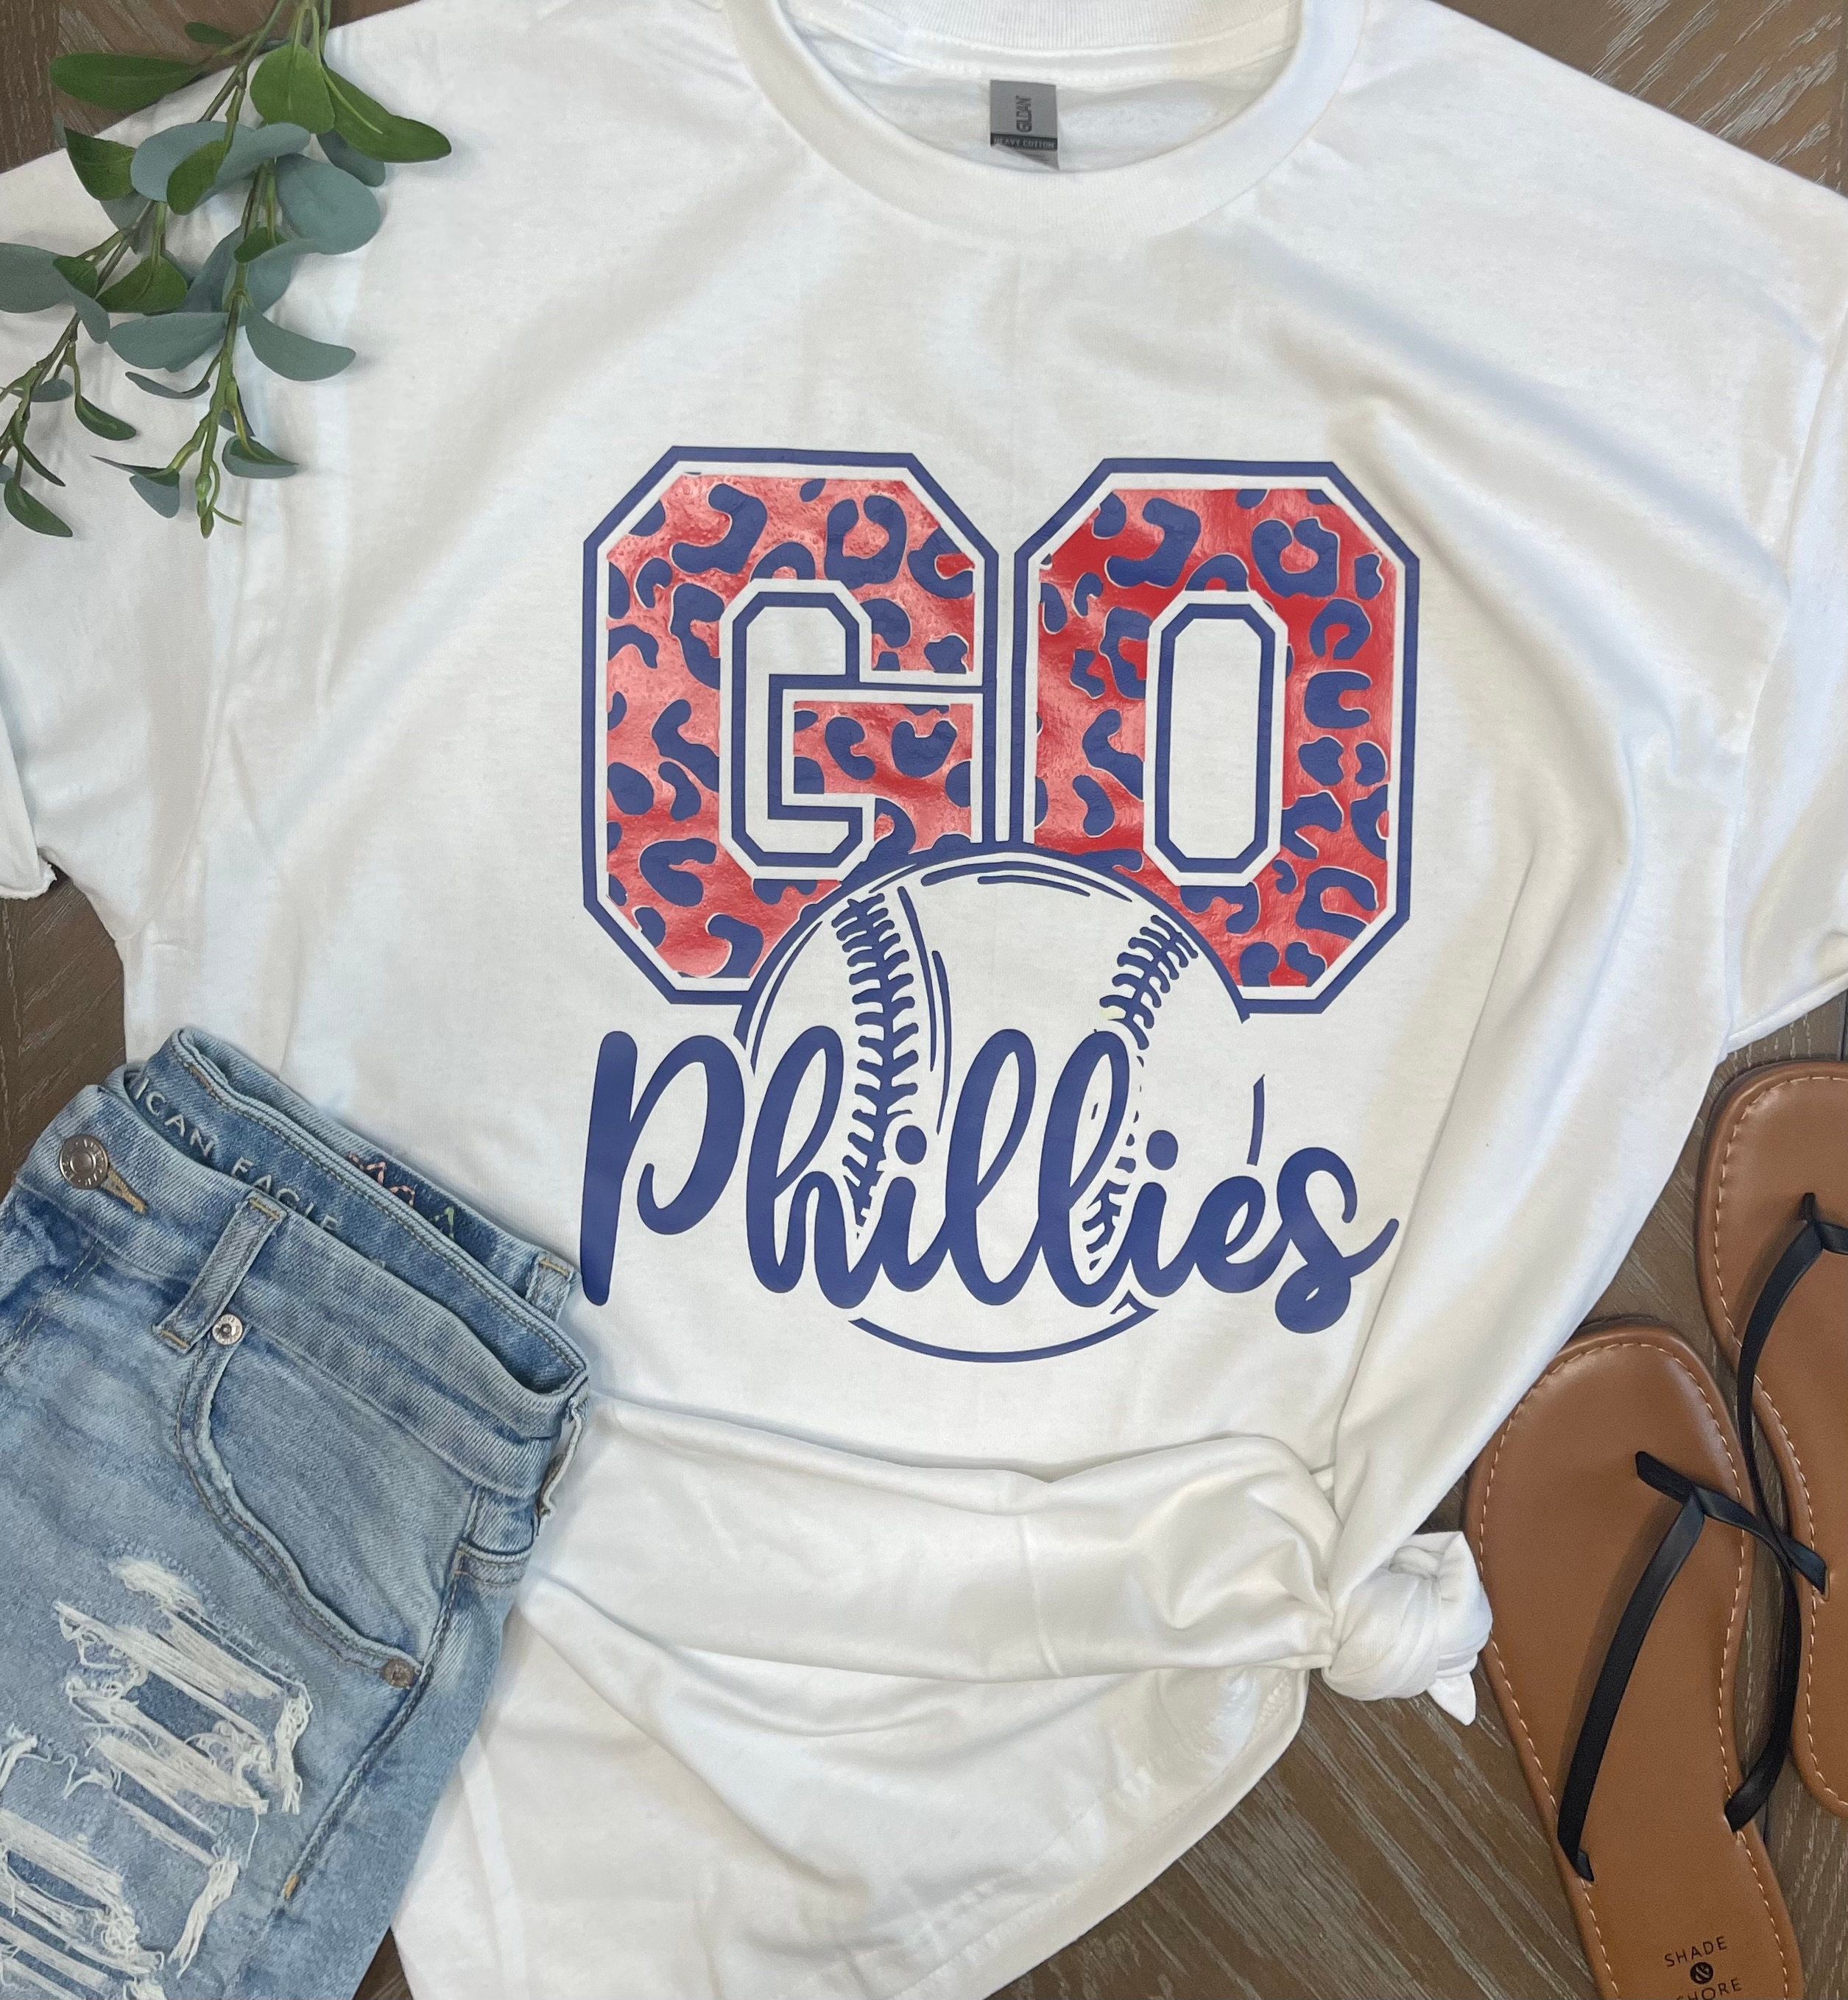 Go Phillies T-shirt 